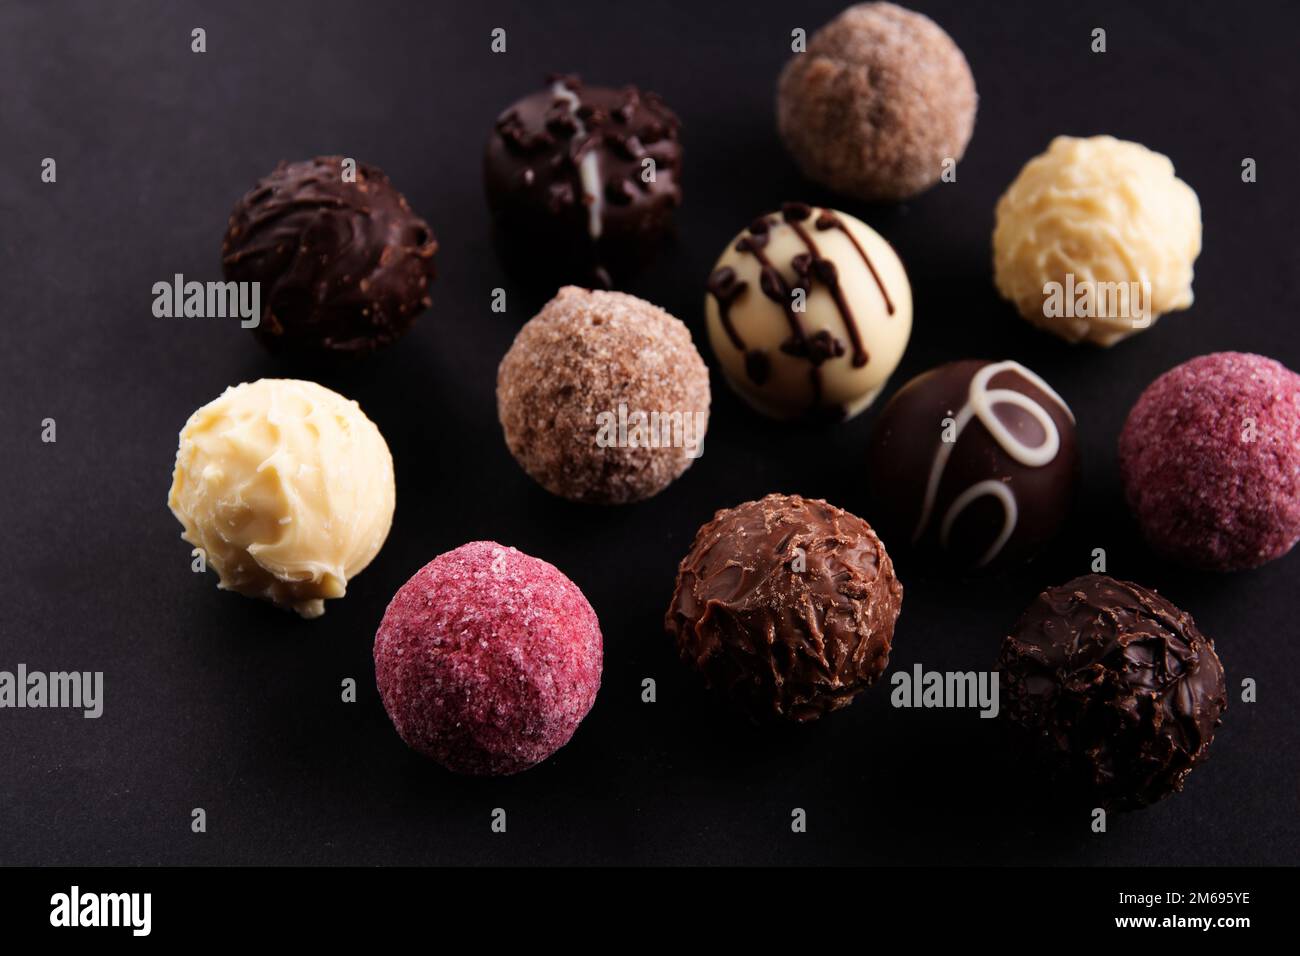 dessert al cioccolato dolce fotografico in assortimento su sfondo nero Foto Stock